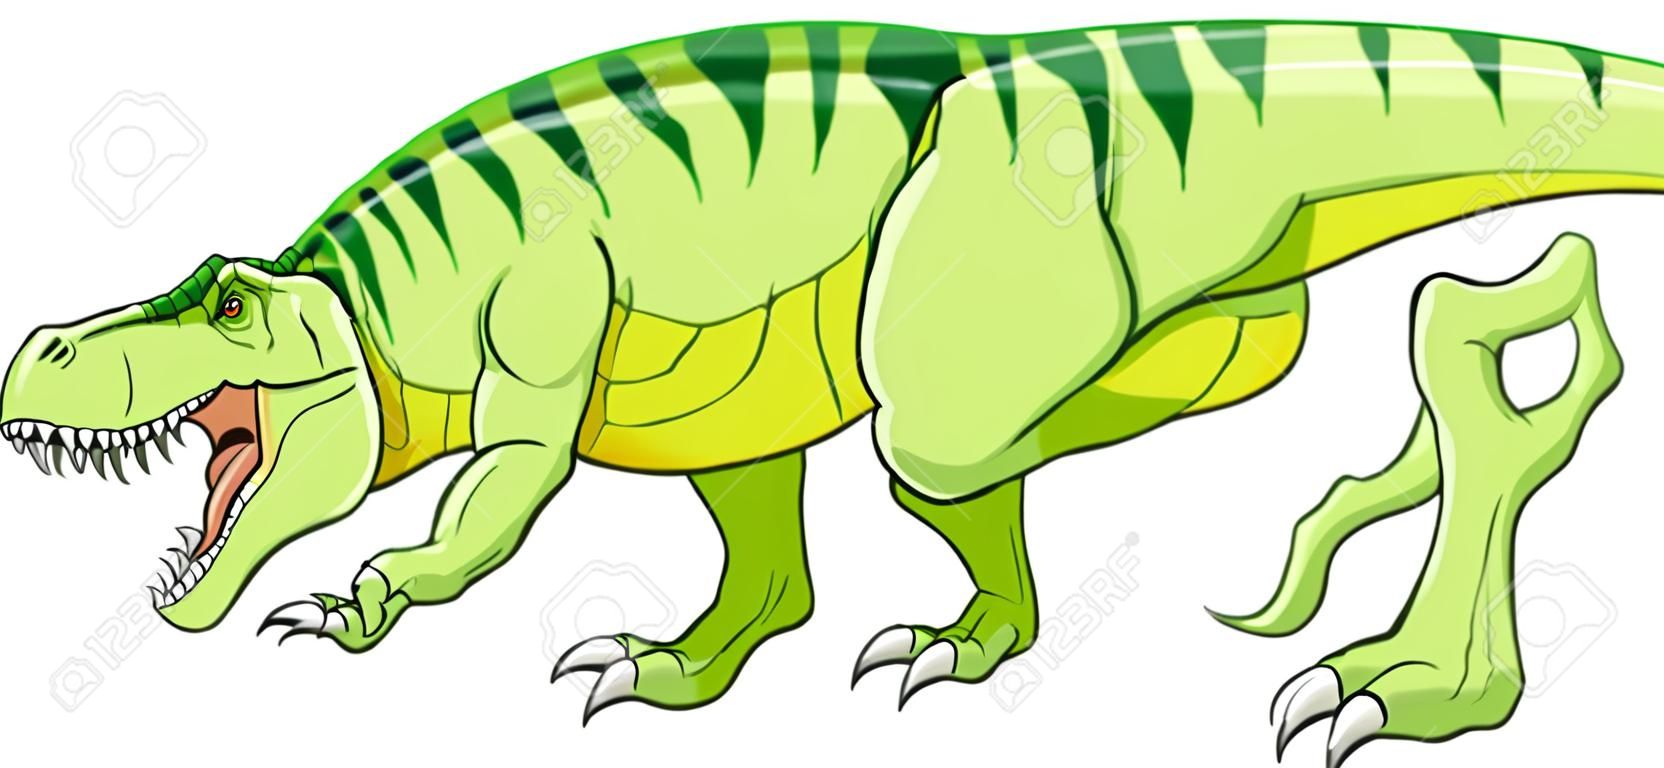 Cartoon green t-rex dinosaur growling